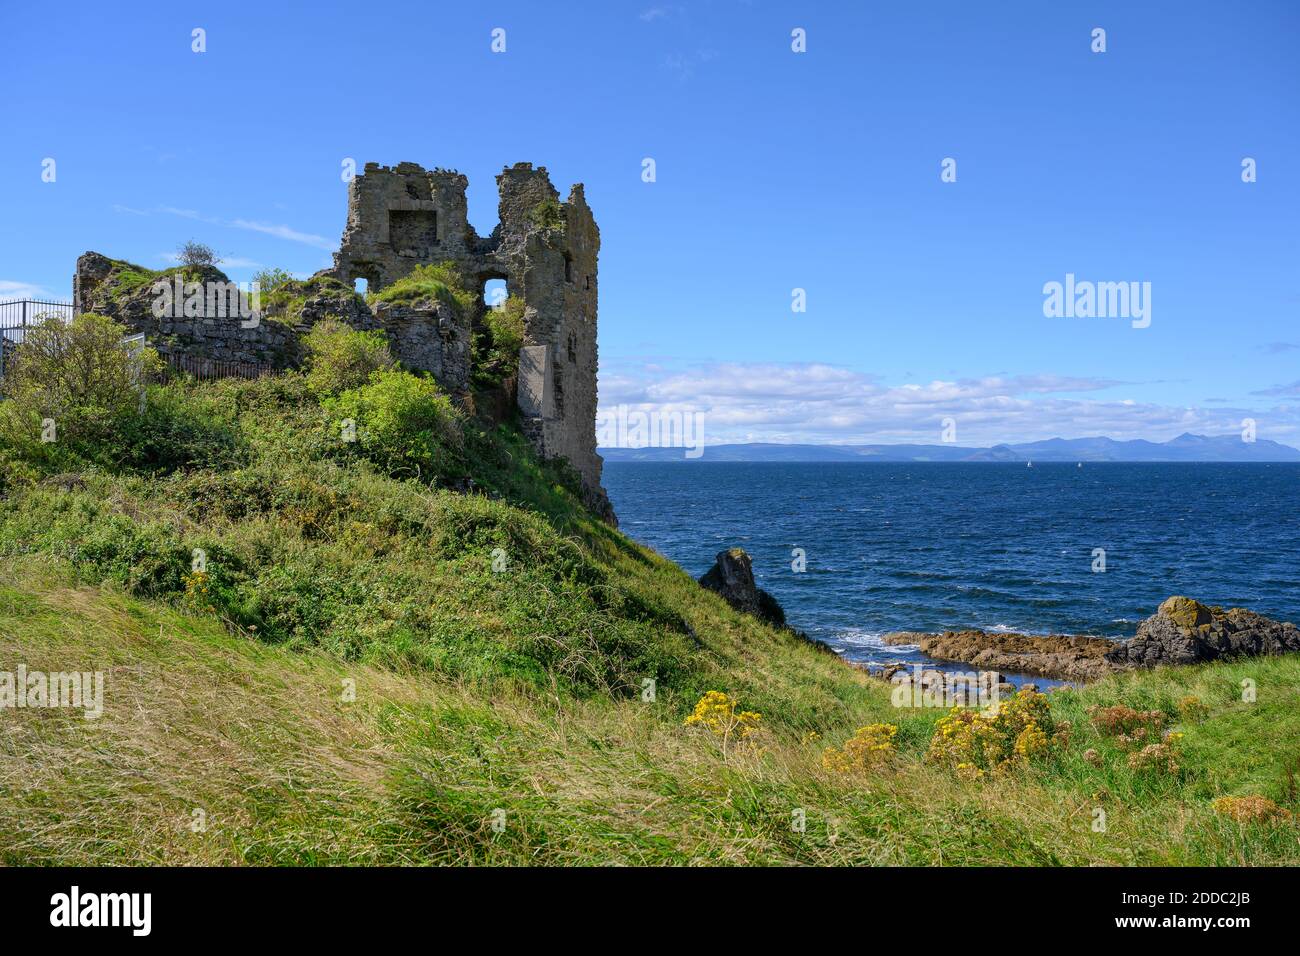 Reino Unido, Escocia, Ruinas de Dunure Castillo con el Mar de Irlanda en el fondo Foto de stock